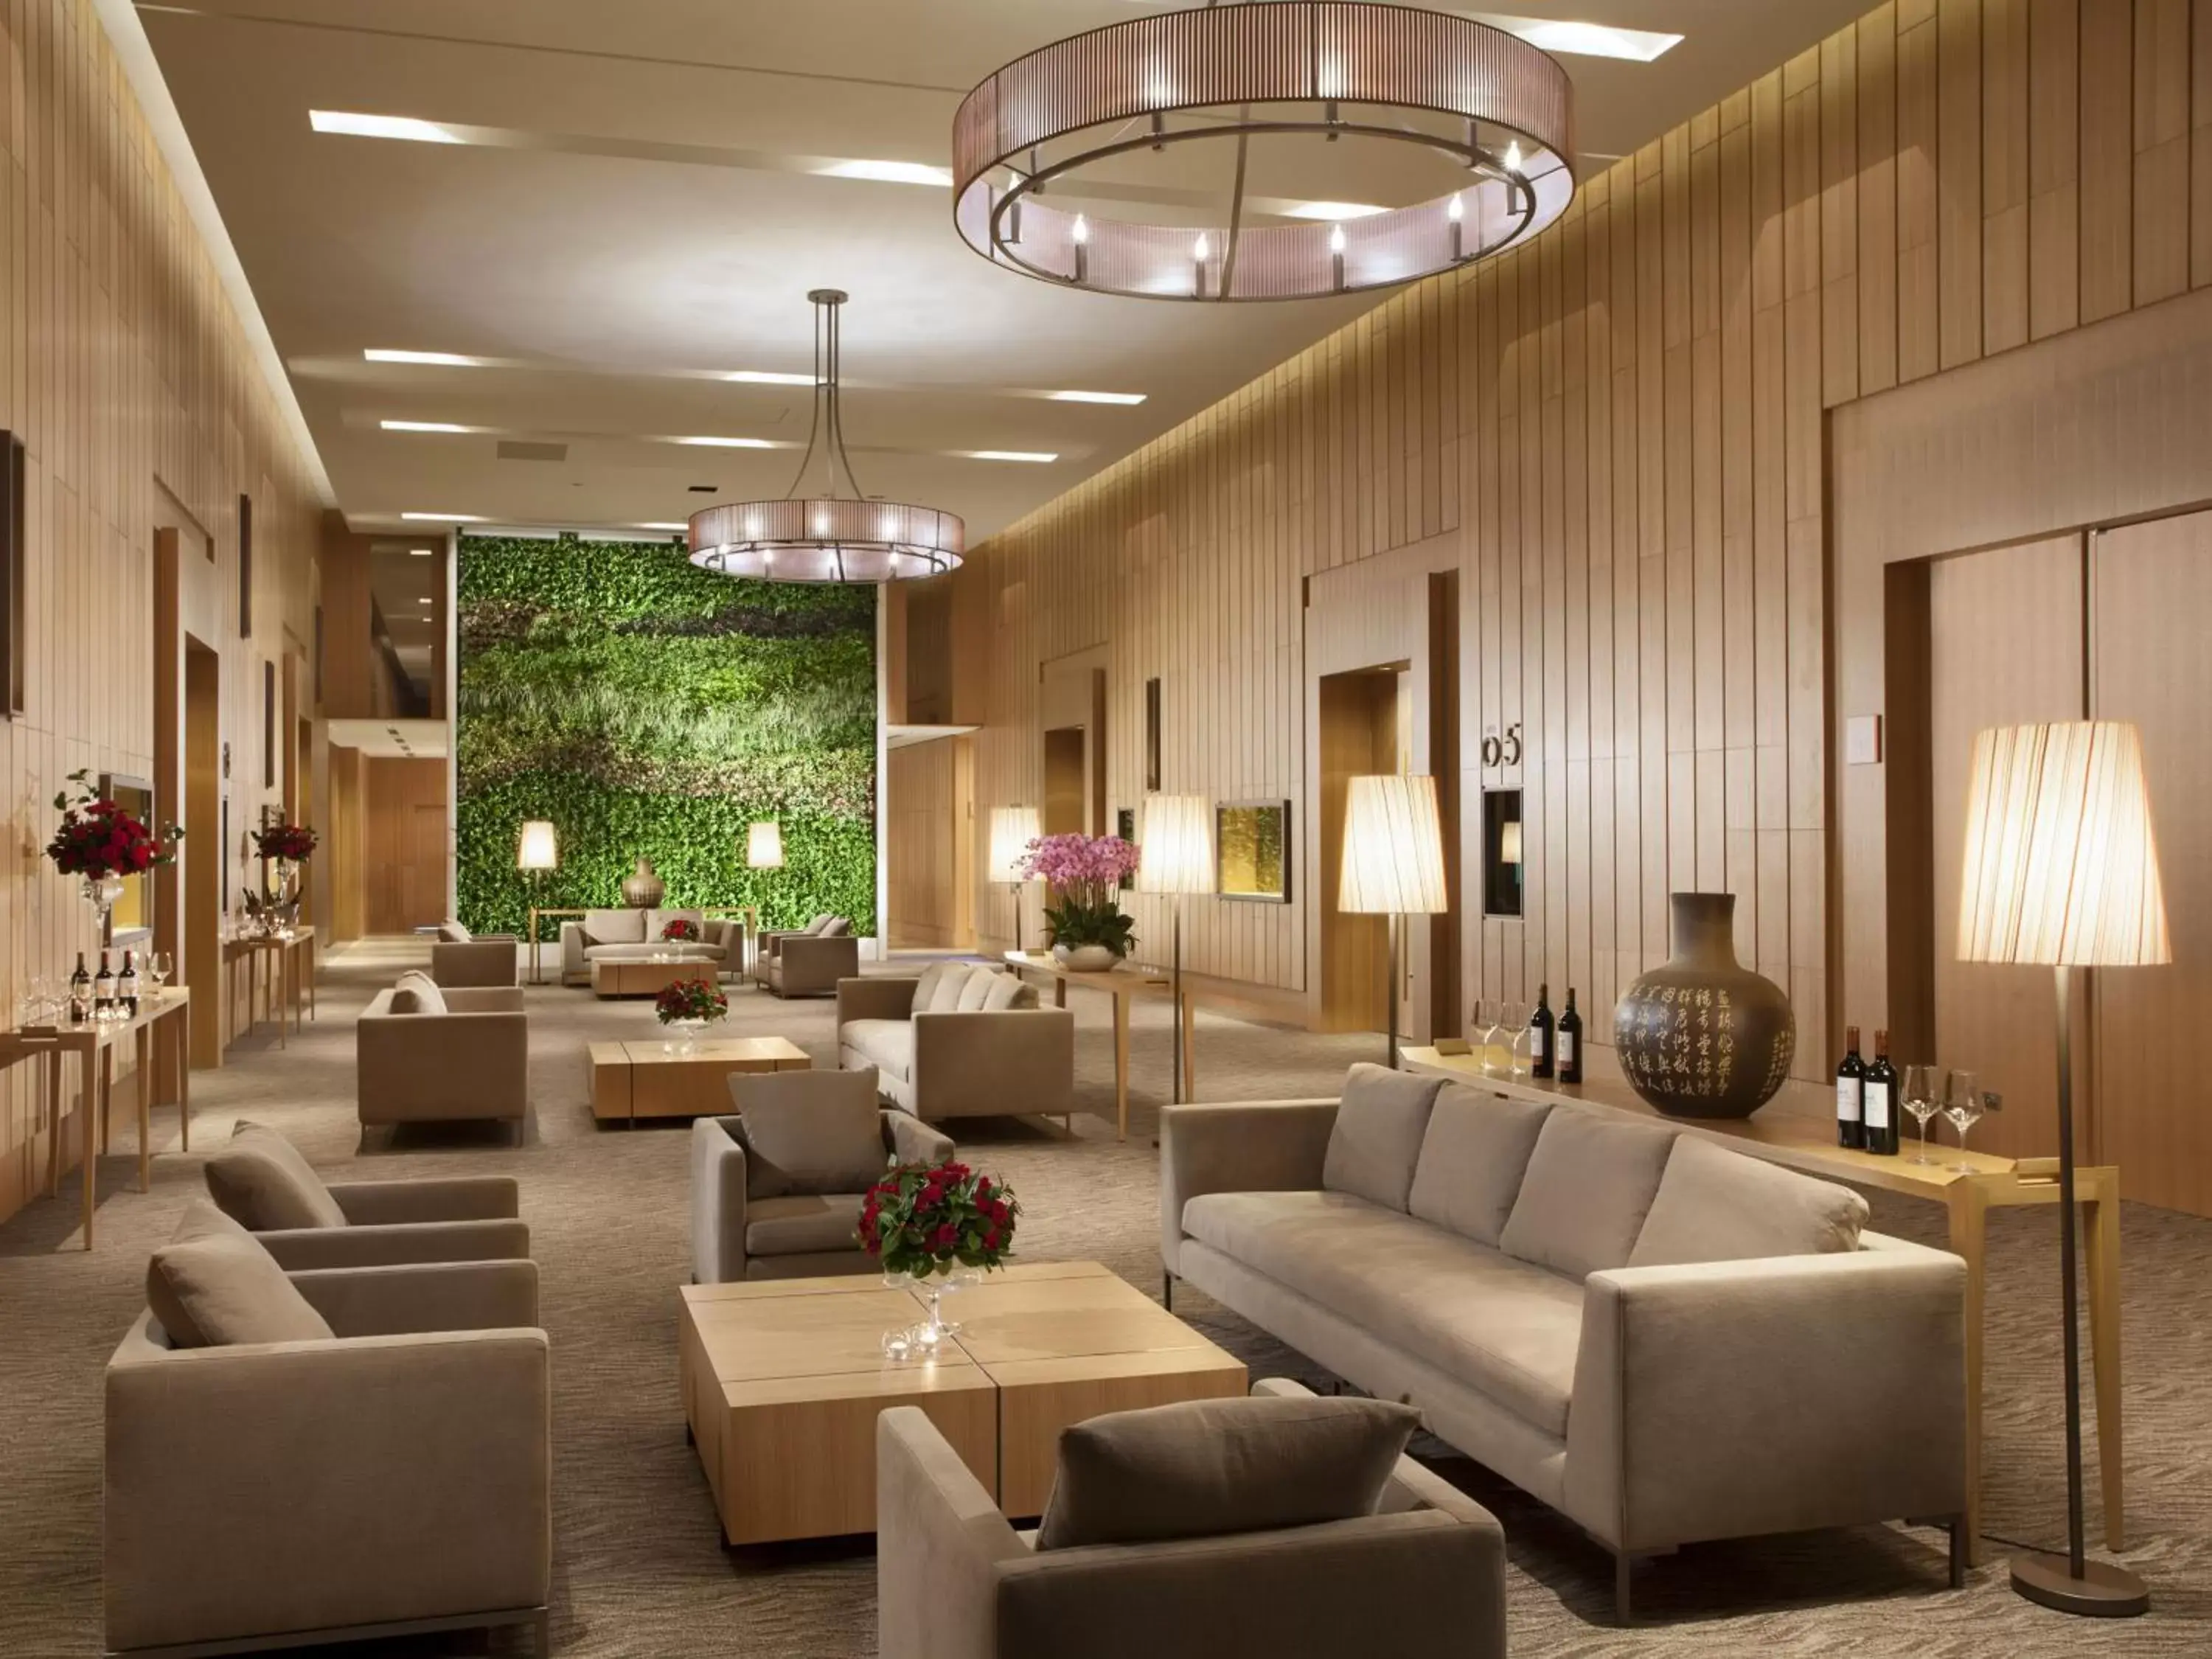 Lobby or reception, Lobby/Reception in Millennium Hotel Taichung